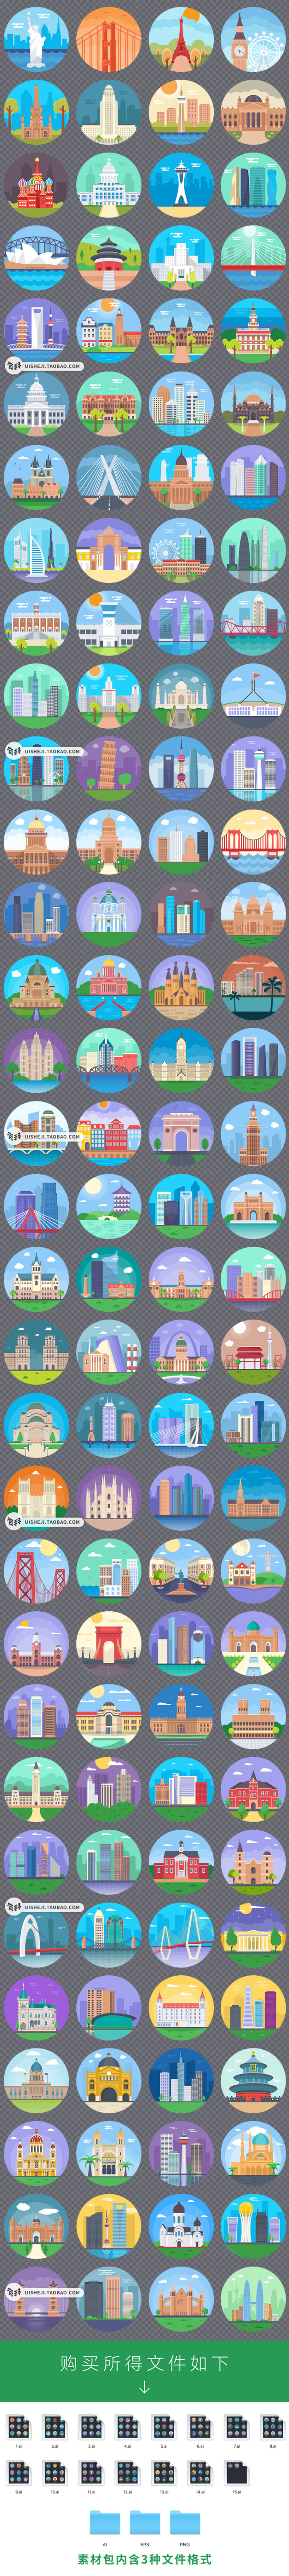 扁平化世界著名旅游城市建筑地标插画png图标ai矢量设计素材s297